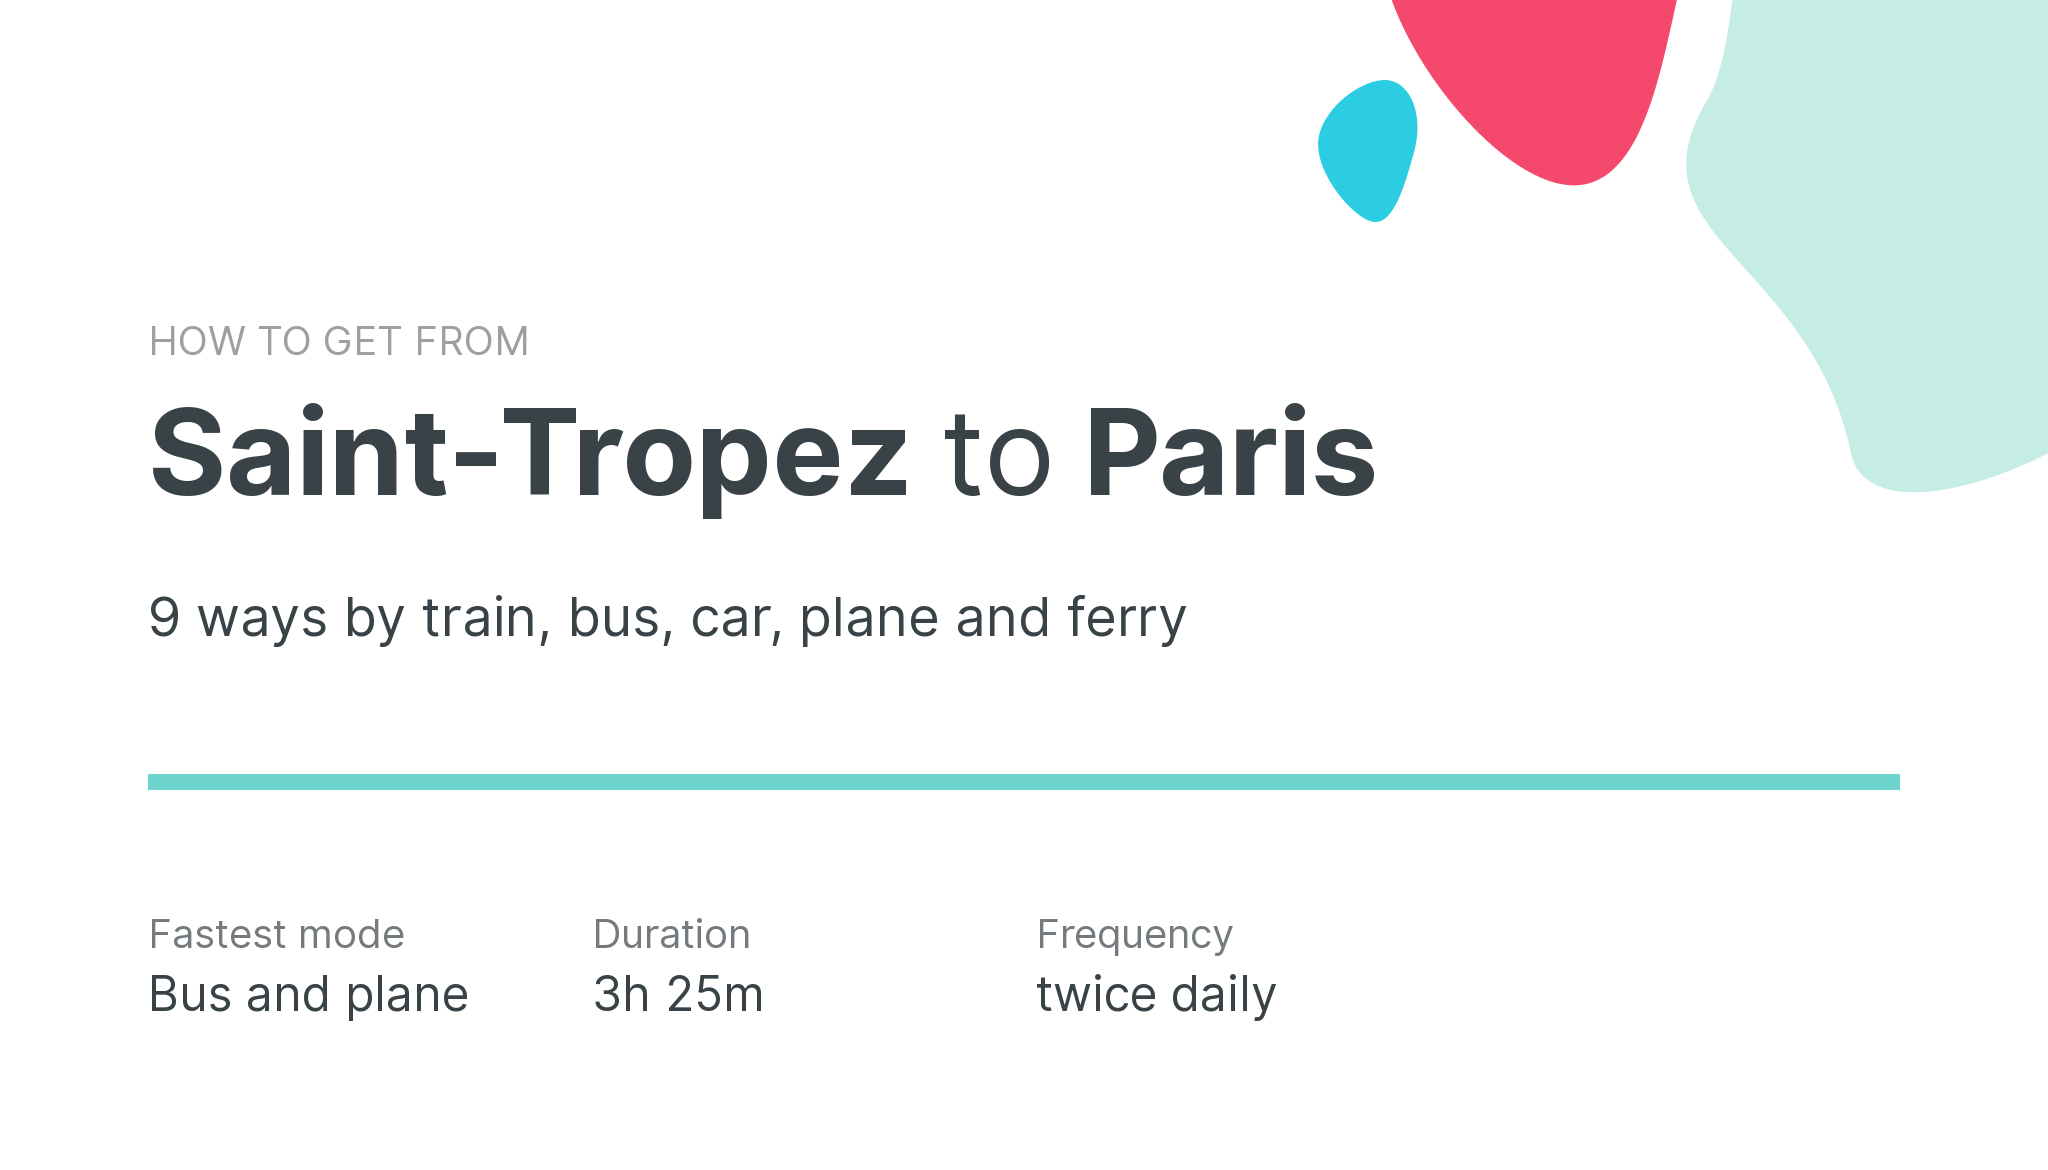 How do I get from Saint-Tropez to Paris